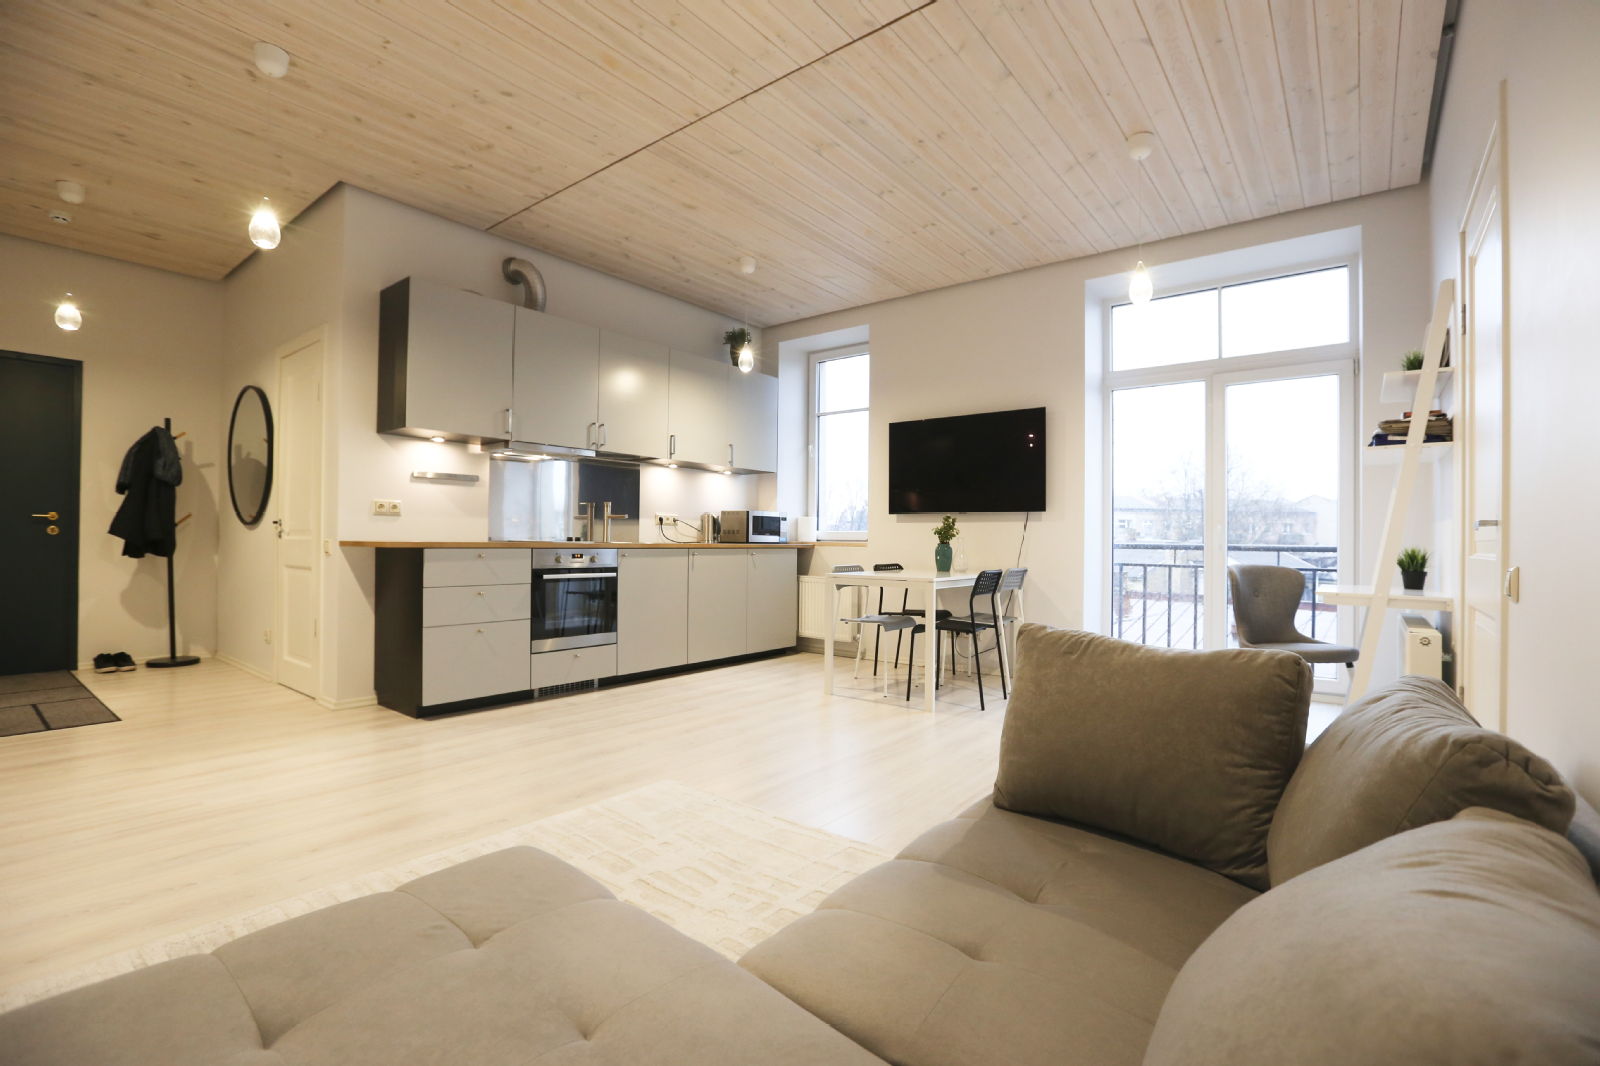 Jaunākie īres dzīvokļi no 380 līdz 550 EUR - mūsdienīgi un dizainiski! - Nekustamo īpašumu ziņas - City24.lv nekustamo īpašumu sludinājumu portāls